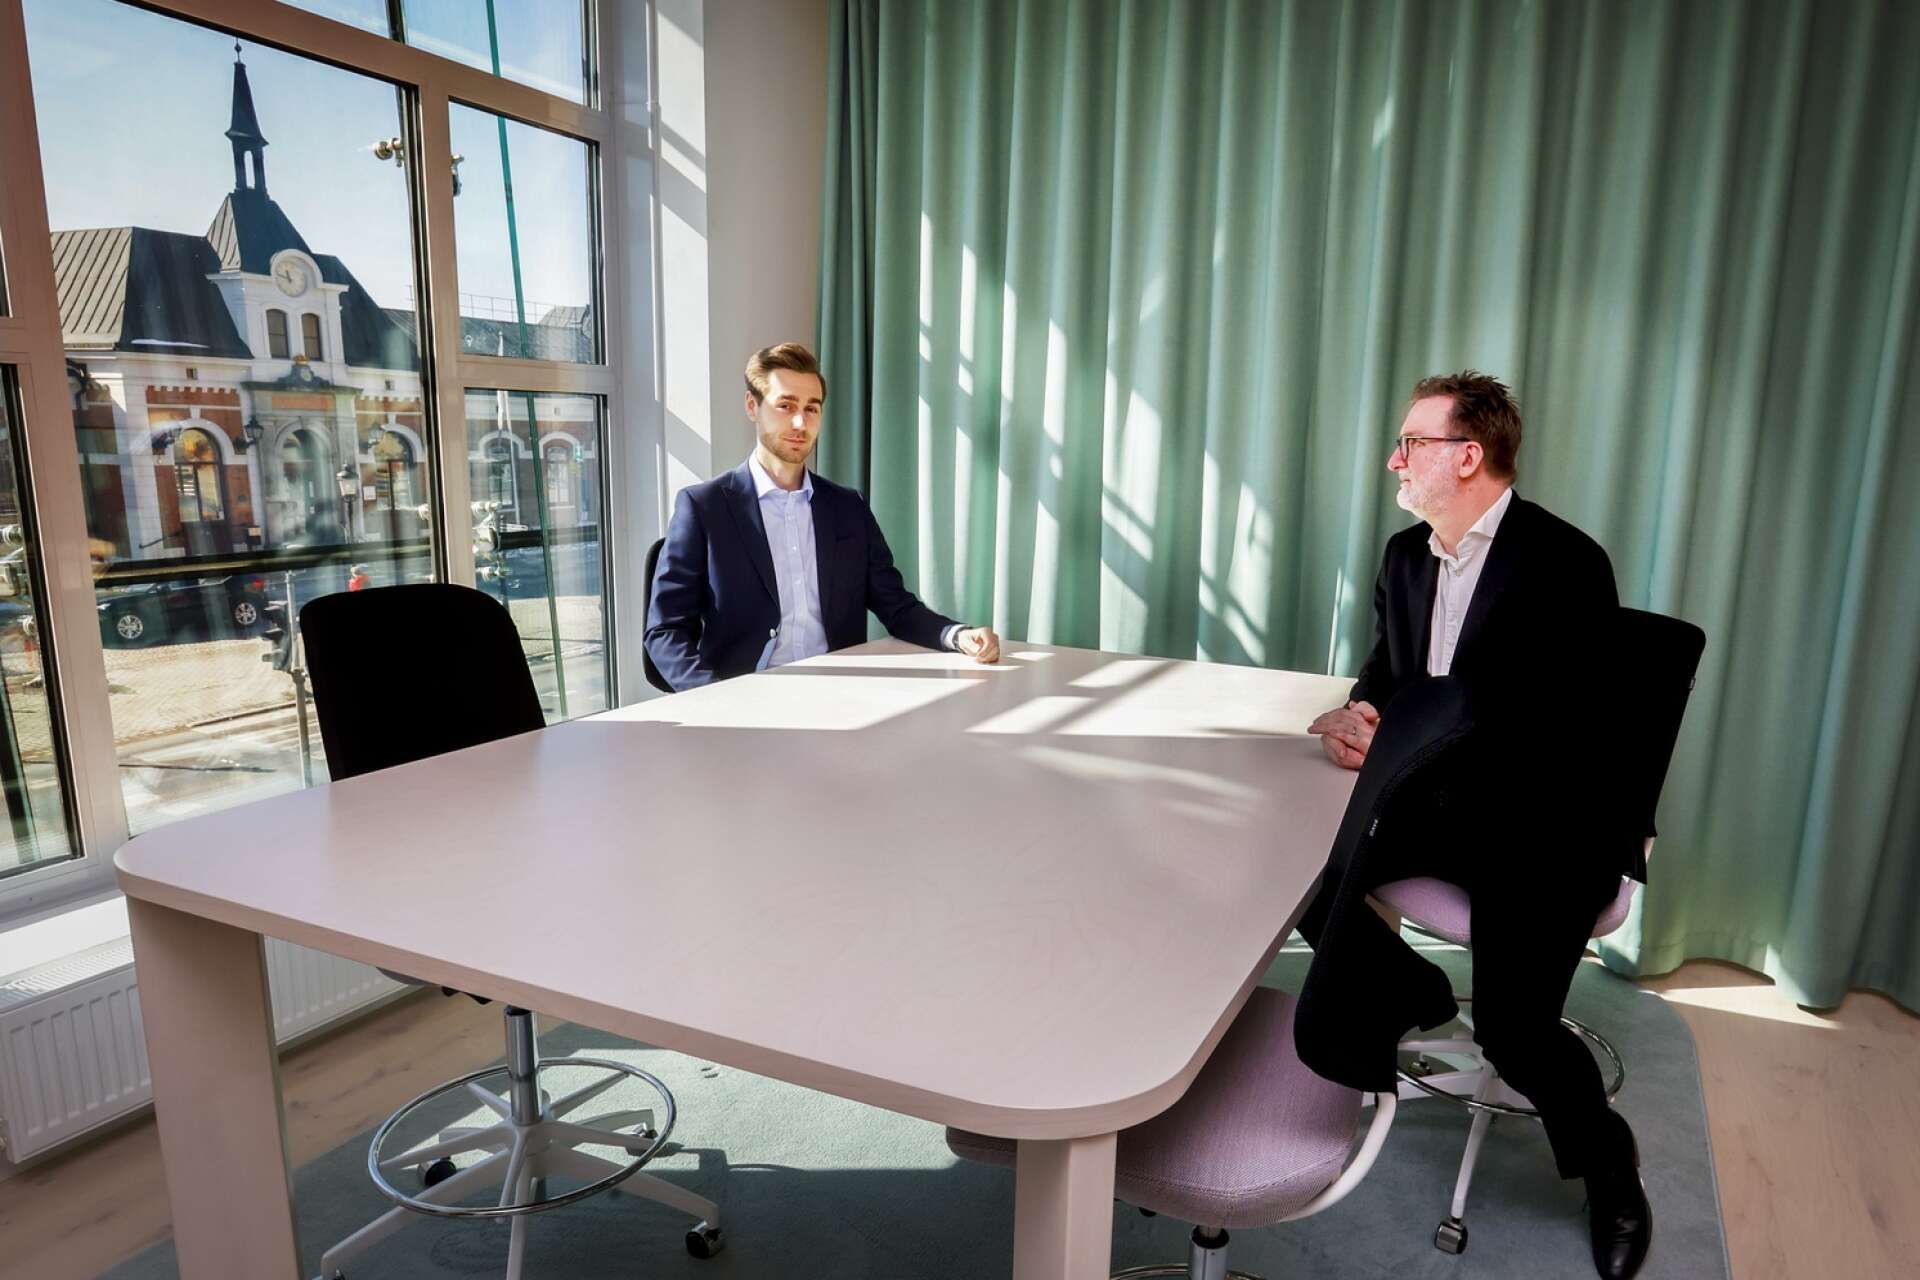 Milton Viktorsson, redovisningsledare, och Uwe Scheele, kontorschef på Grant Thornton i Karlstad, i ett av mötesrummen på det nya kontoret. De gillar det centrala läget intill järnvägsstationen, och det framtida Resecentrum.